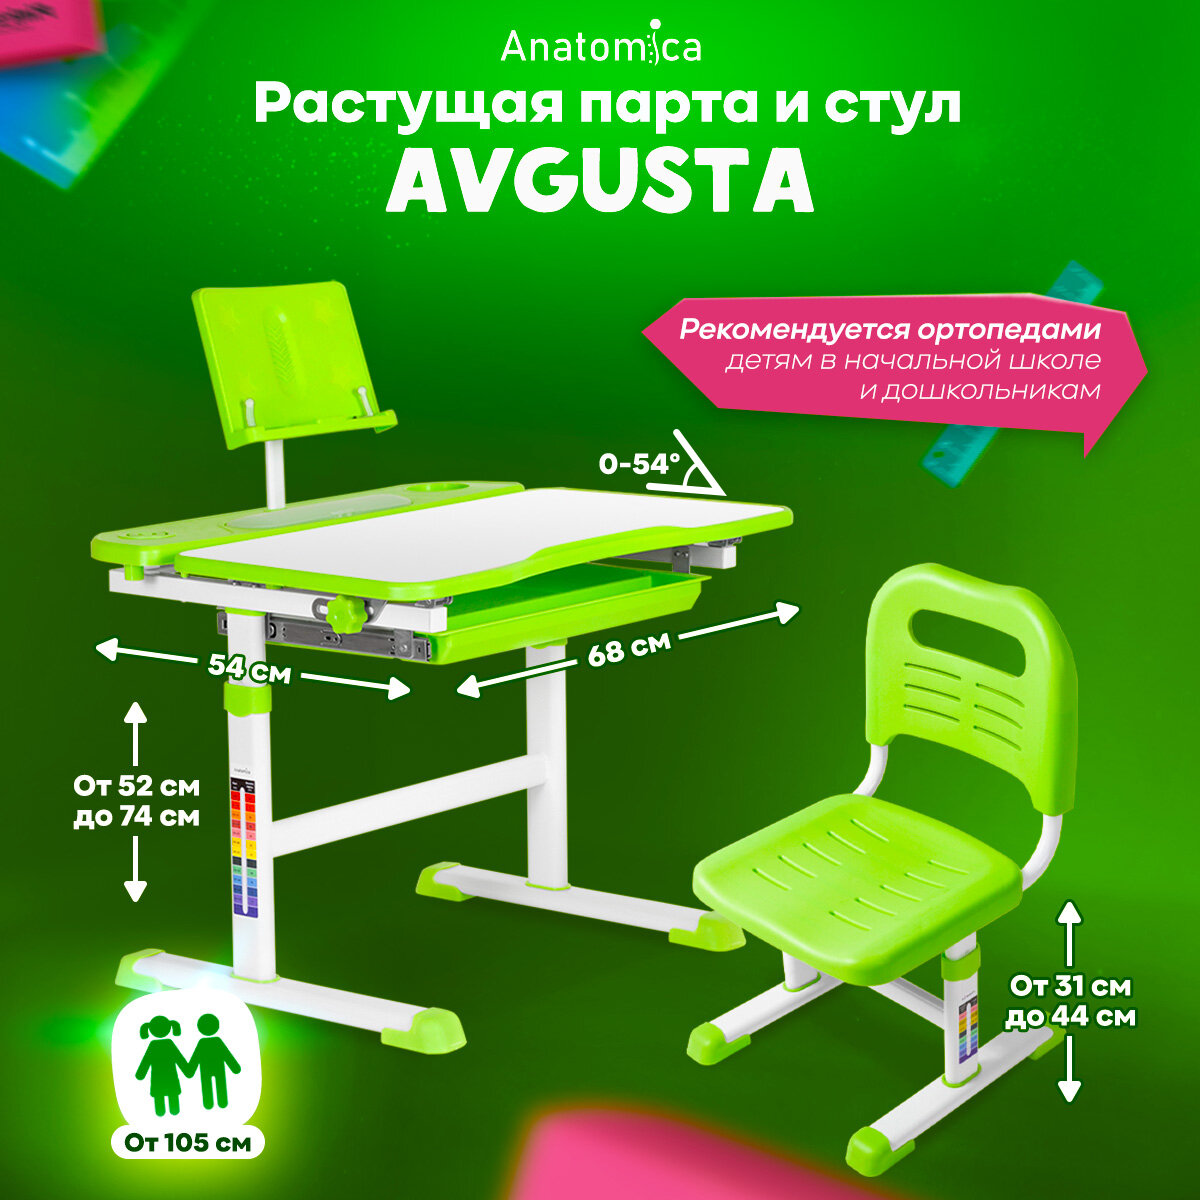 Комплект парта и стул Anatomica Avgusta белый/зеленый